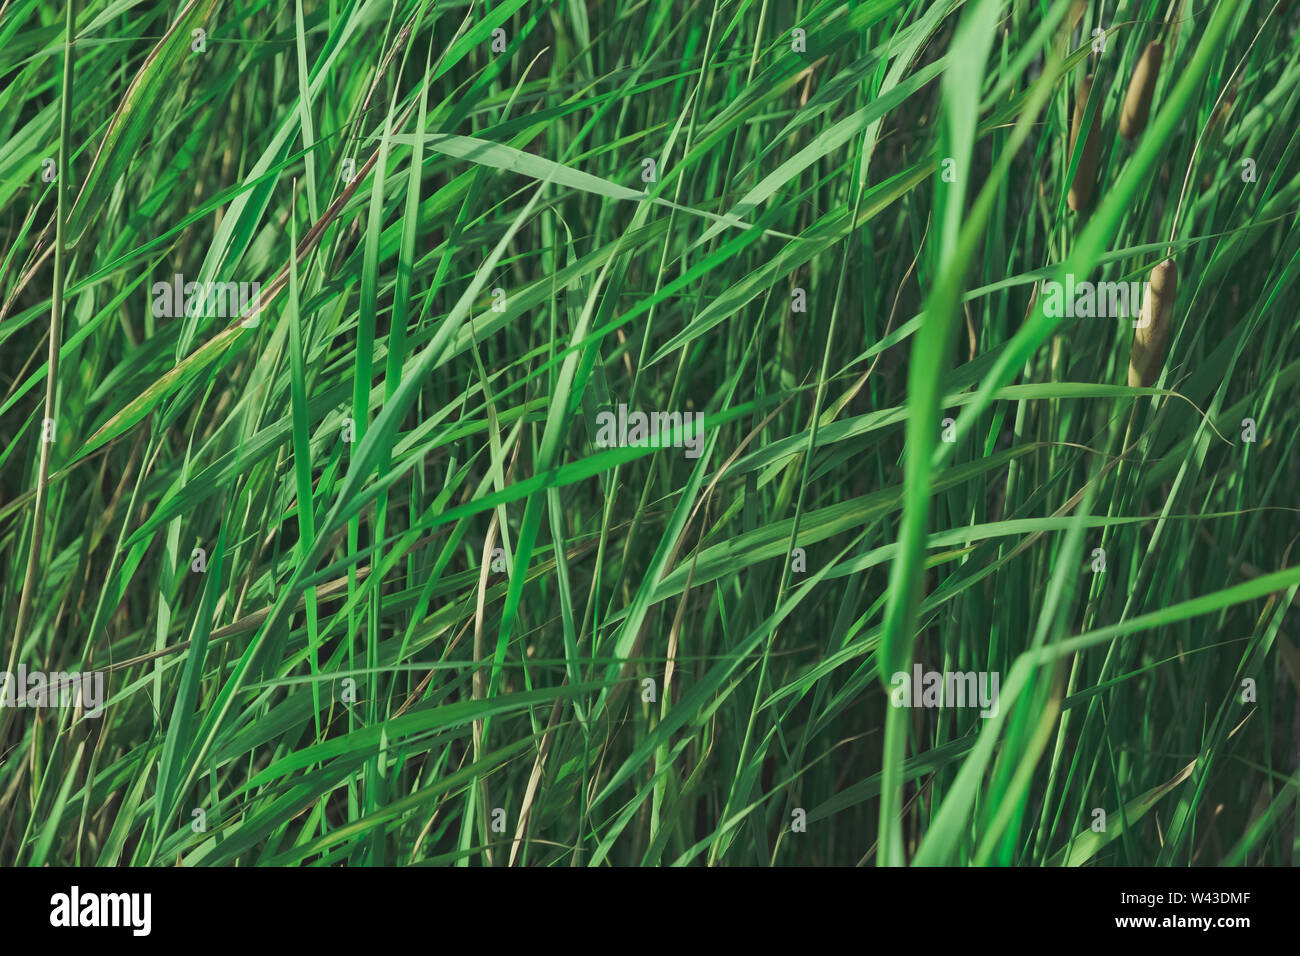 Balrush s'est évanoui dans les végétaux verts. Détails de nature apaisante : sunlit lake canne, seul-ton image d'arrière-plan Banque D'Images